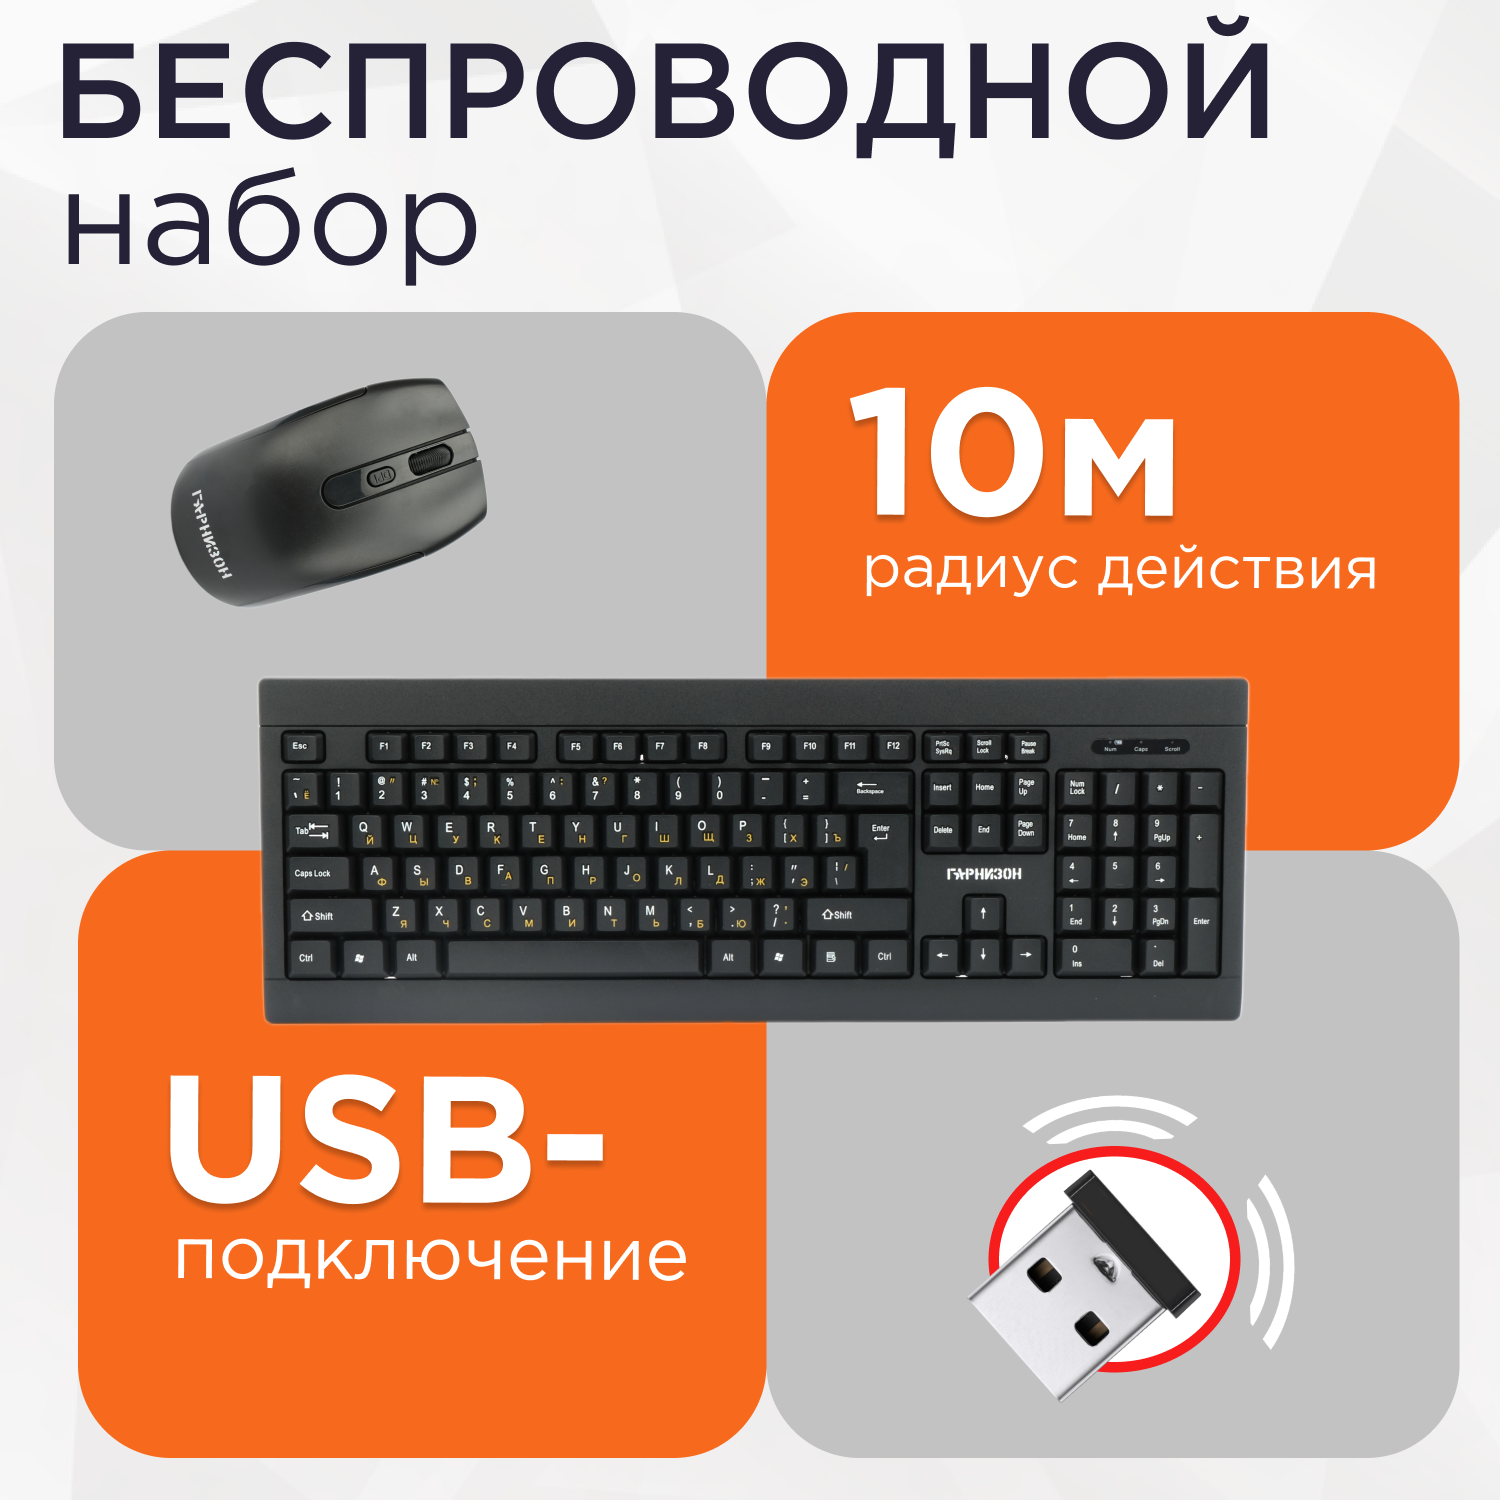 Беспроводной комплект клавиатура + мышь "Гарнизон" GKS-150